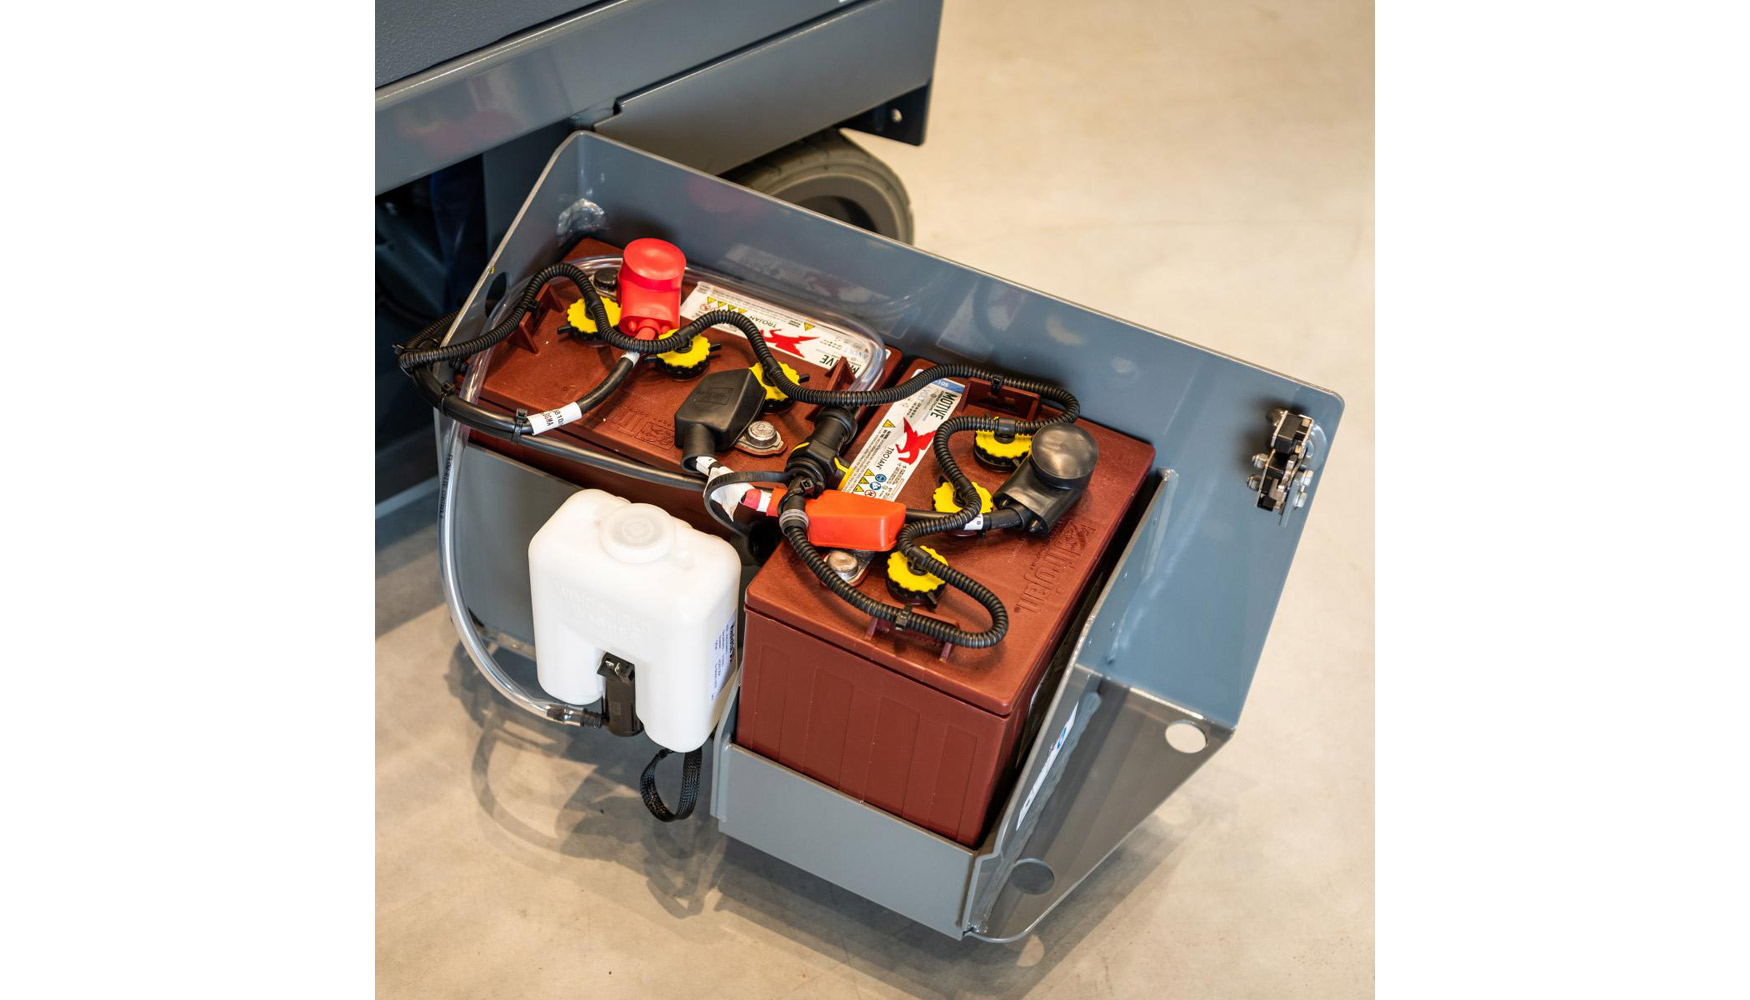 Paquete de mantenimiento automtico: Usando un tanque de agua integrado en el chasis, la batera se rellena automticamente segn sea necesario...